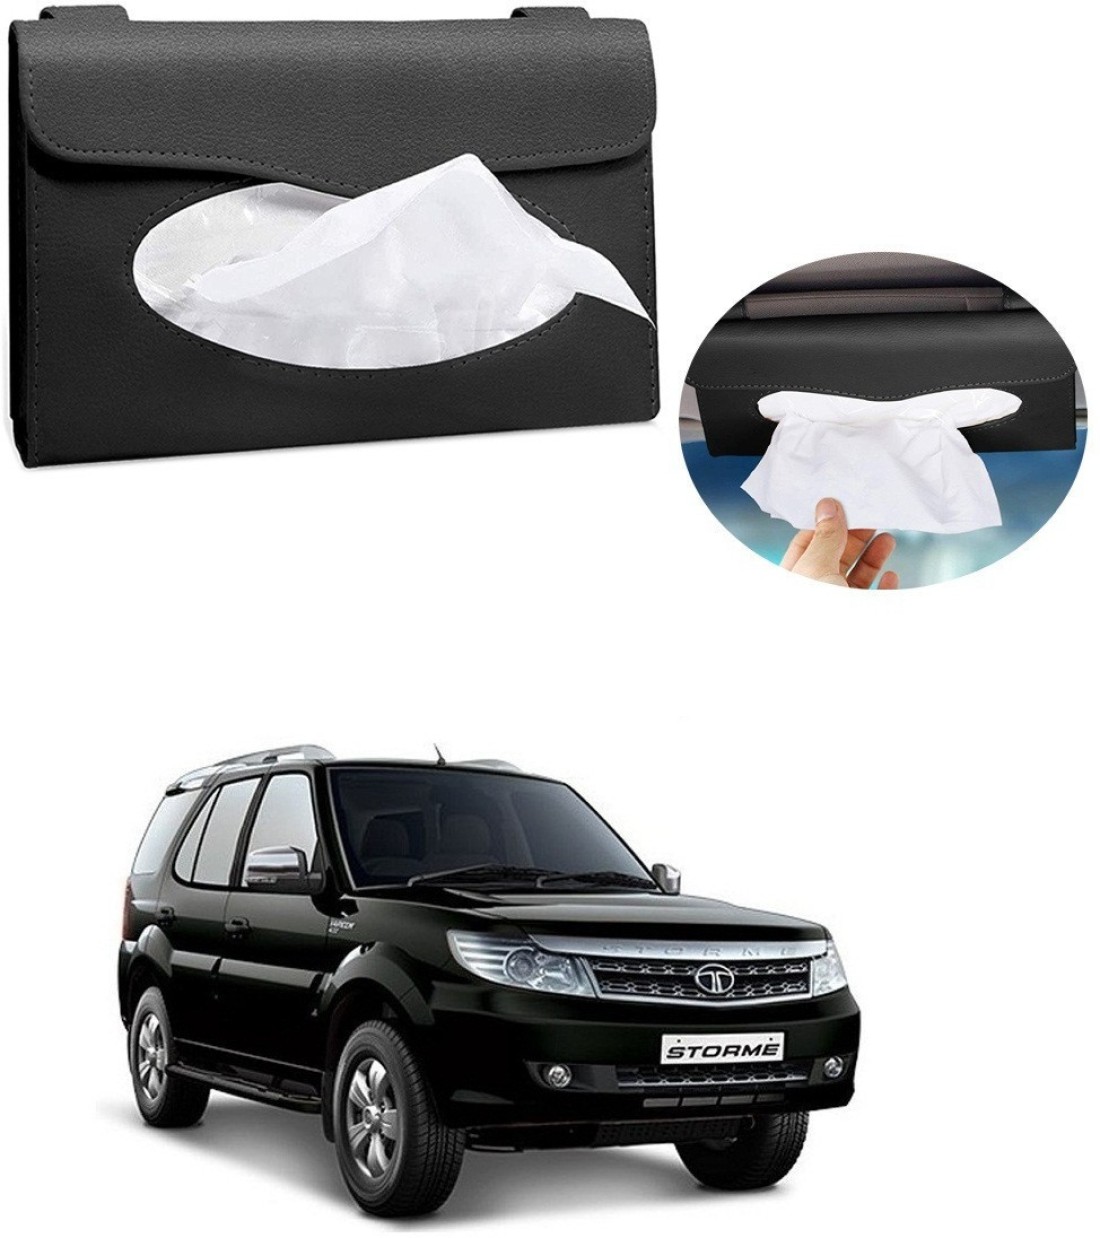 Car Tissue Holder, Sun Visor Napkin Holder, Car Visor Tissue Holder, PU  Leather Backseat Tissue Case Holder for Car, Vehicle (Black) 